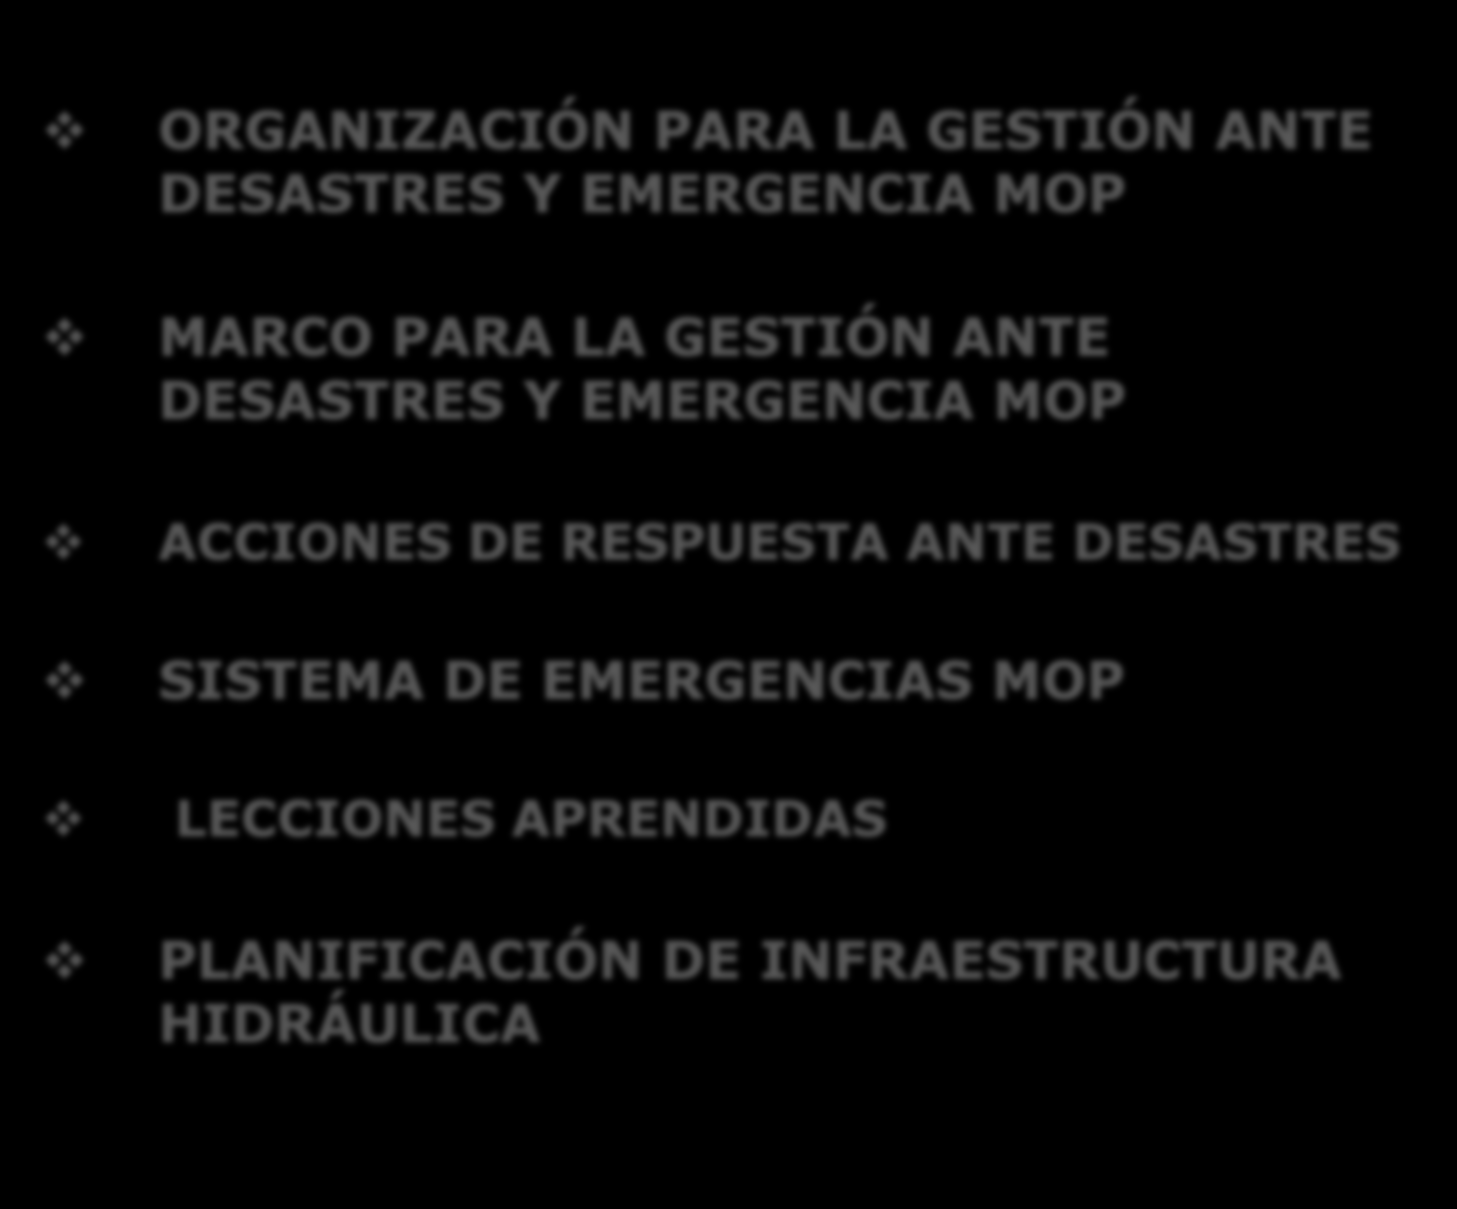 TEMARIO ORGANIZACIÓN PARA LA GESTIÓN ANTE DESASTRES Y EMERGENCIA MOP MARCO PARA LA GESTIÓN ANTE DESASTRES Y EMERGENCIA MOP